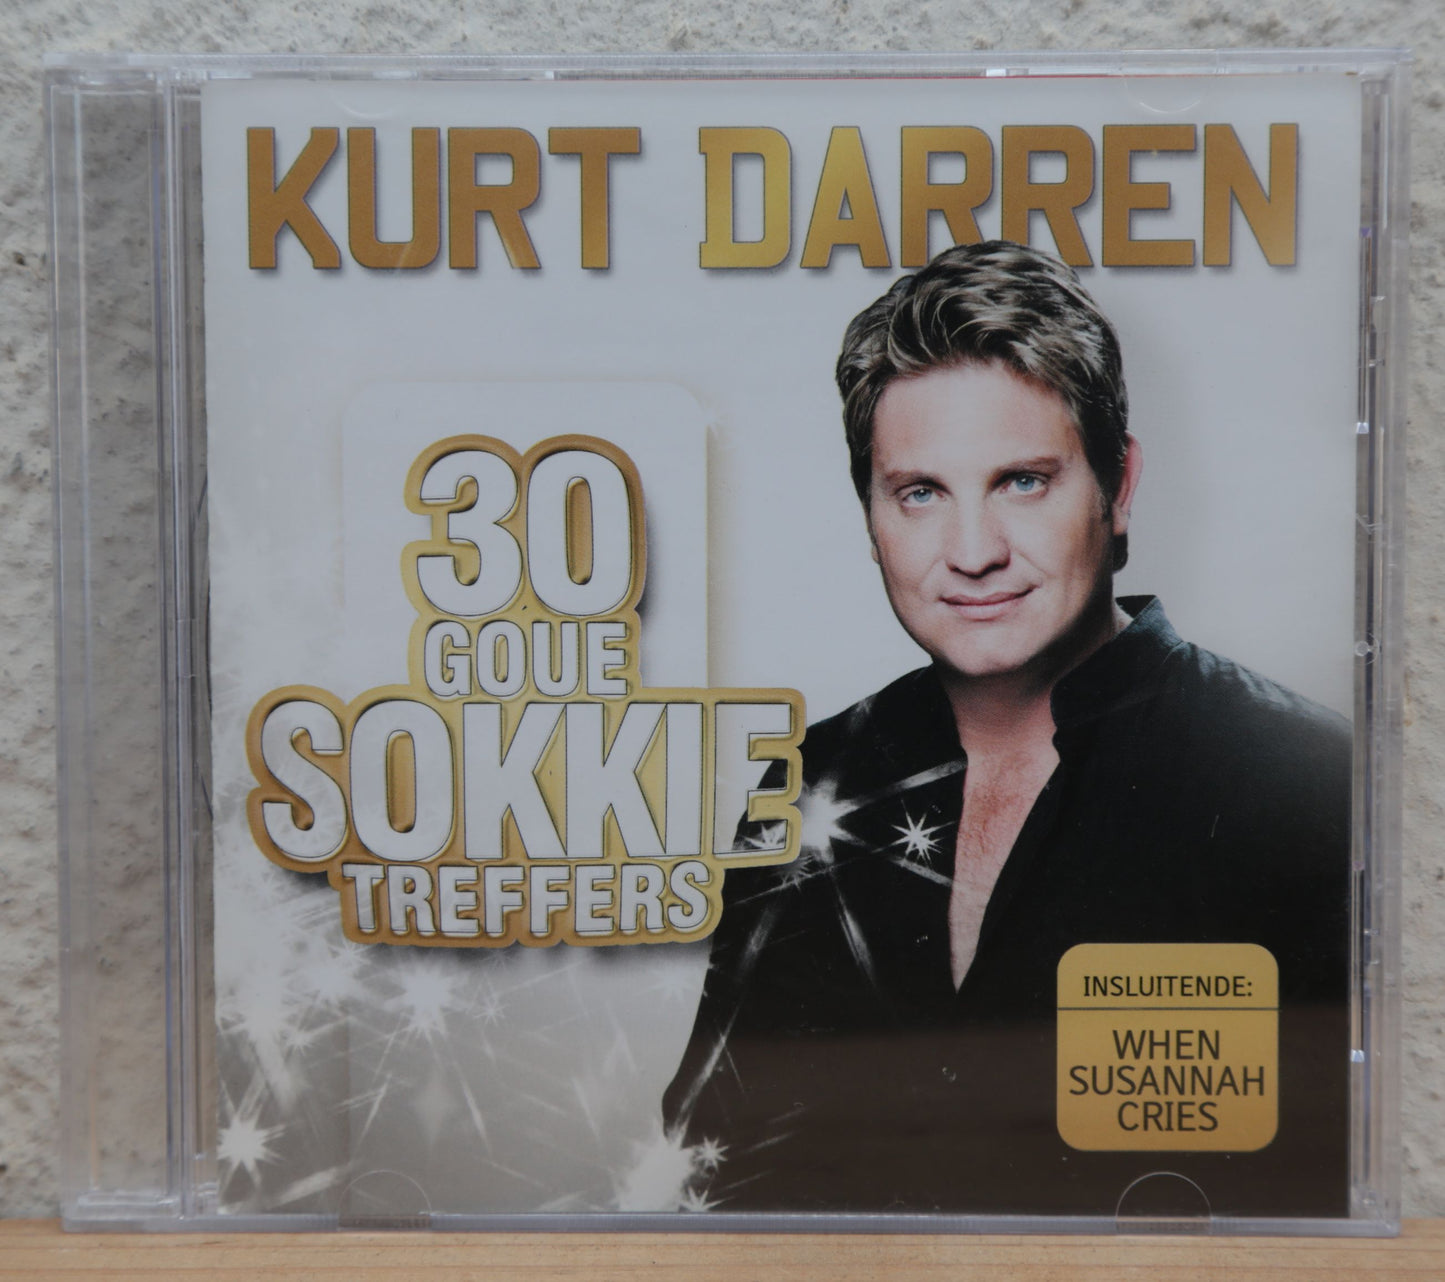 Kurt Darren - 30 goue sokkie treffers (cd)